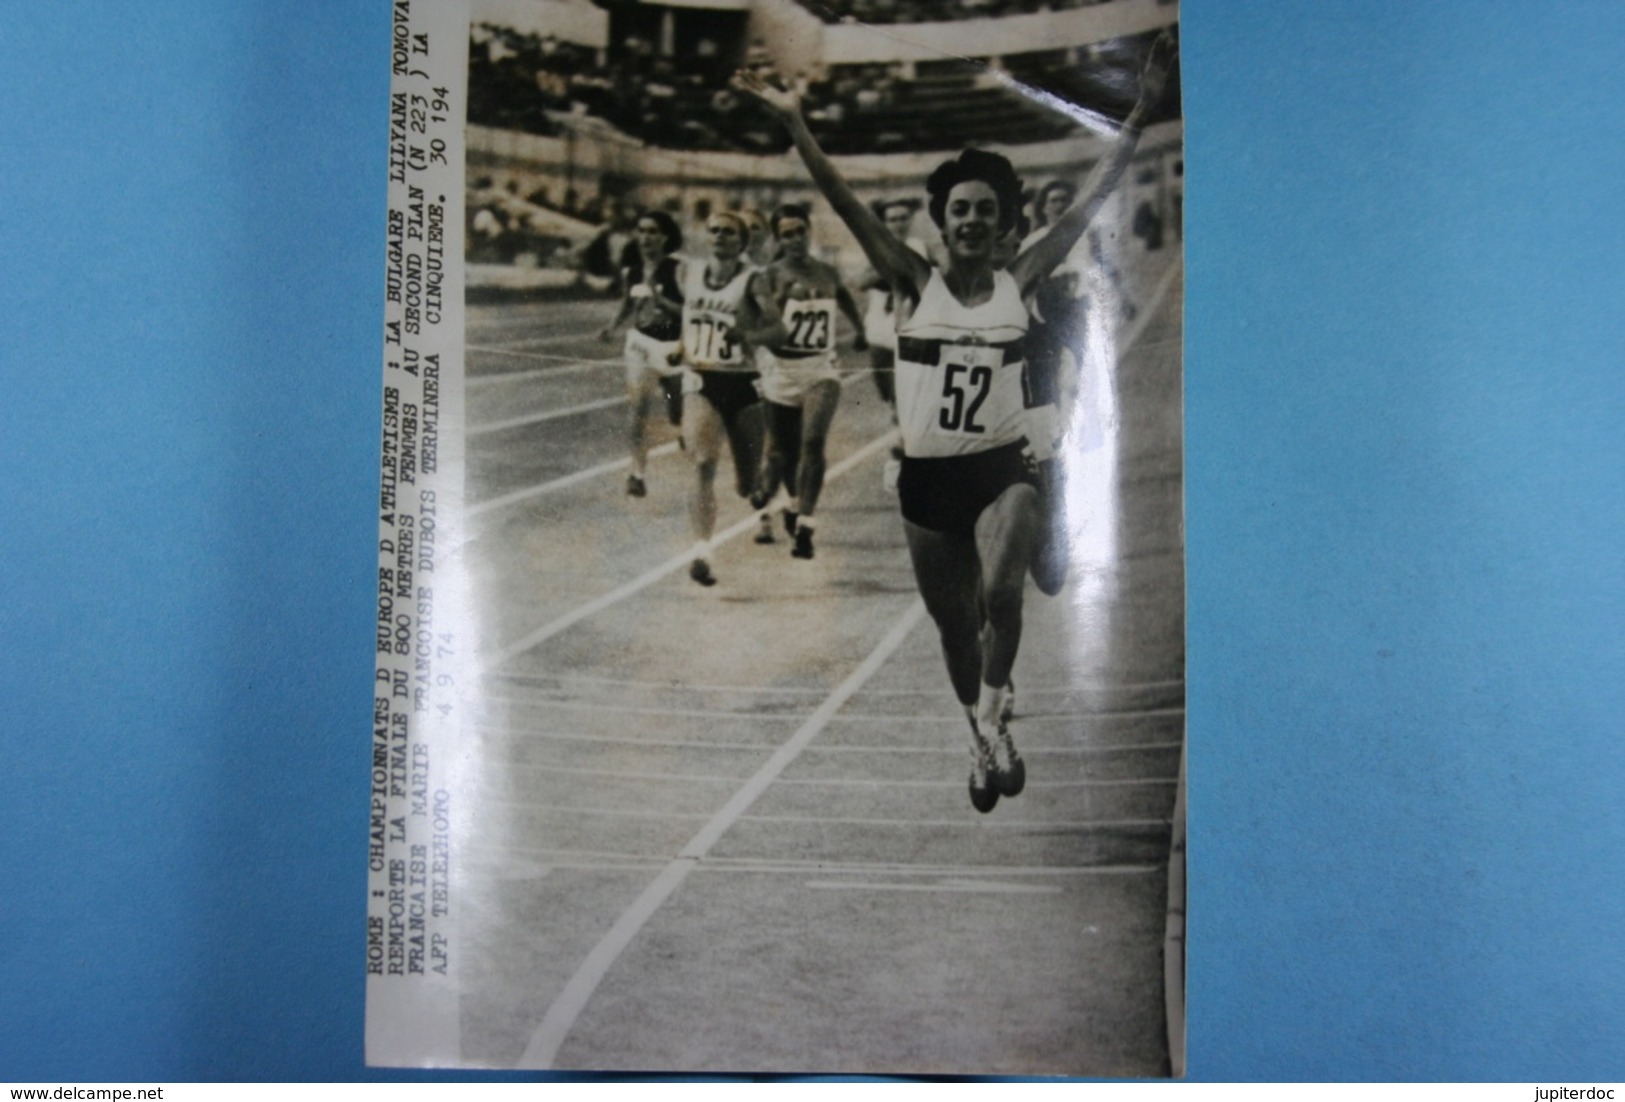 Rome Championnats D'Europe D'athlétisme 4/9/74 Tomova Remporte Le 800M /6/ - Sports